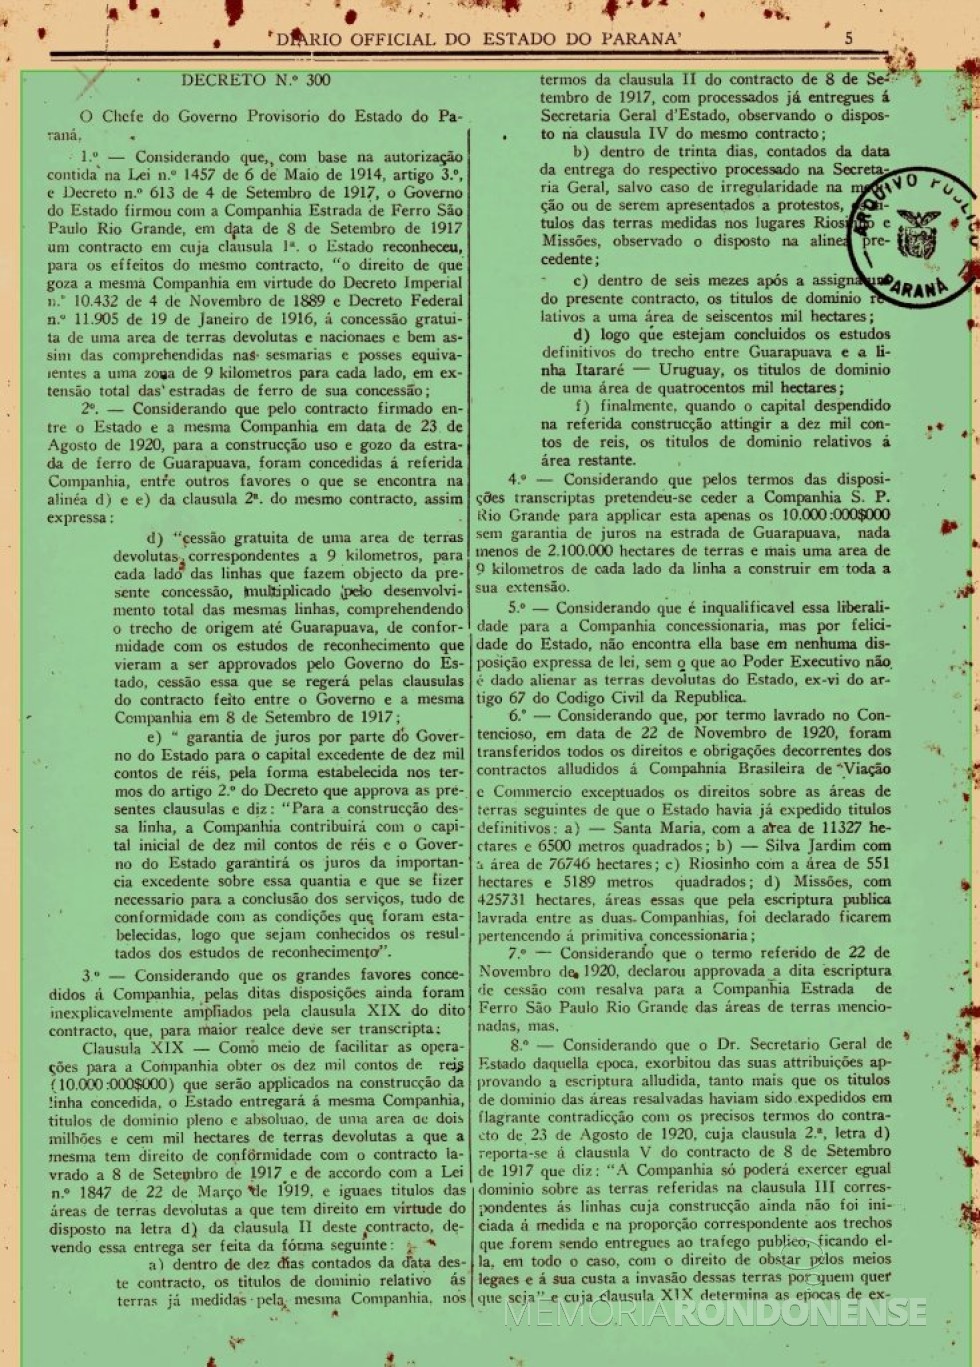 || Parte inicial do Decreto nº 300, de novembro de 1930, expedido pela Interventoria no Estado do Paraná.
Imagem: Acervo Arquivo Público do Paraná - FOTO 8 - 